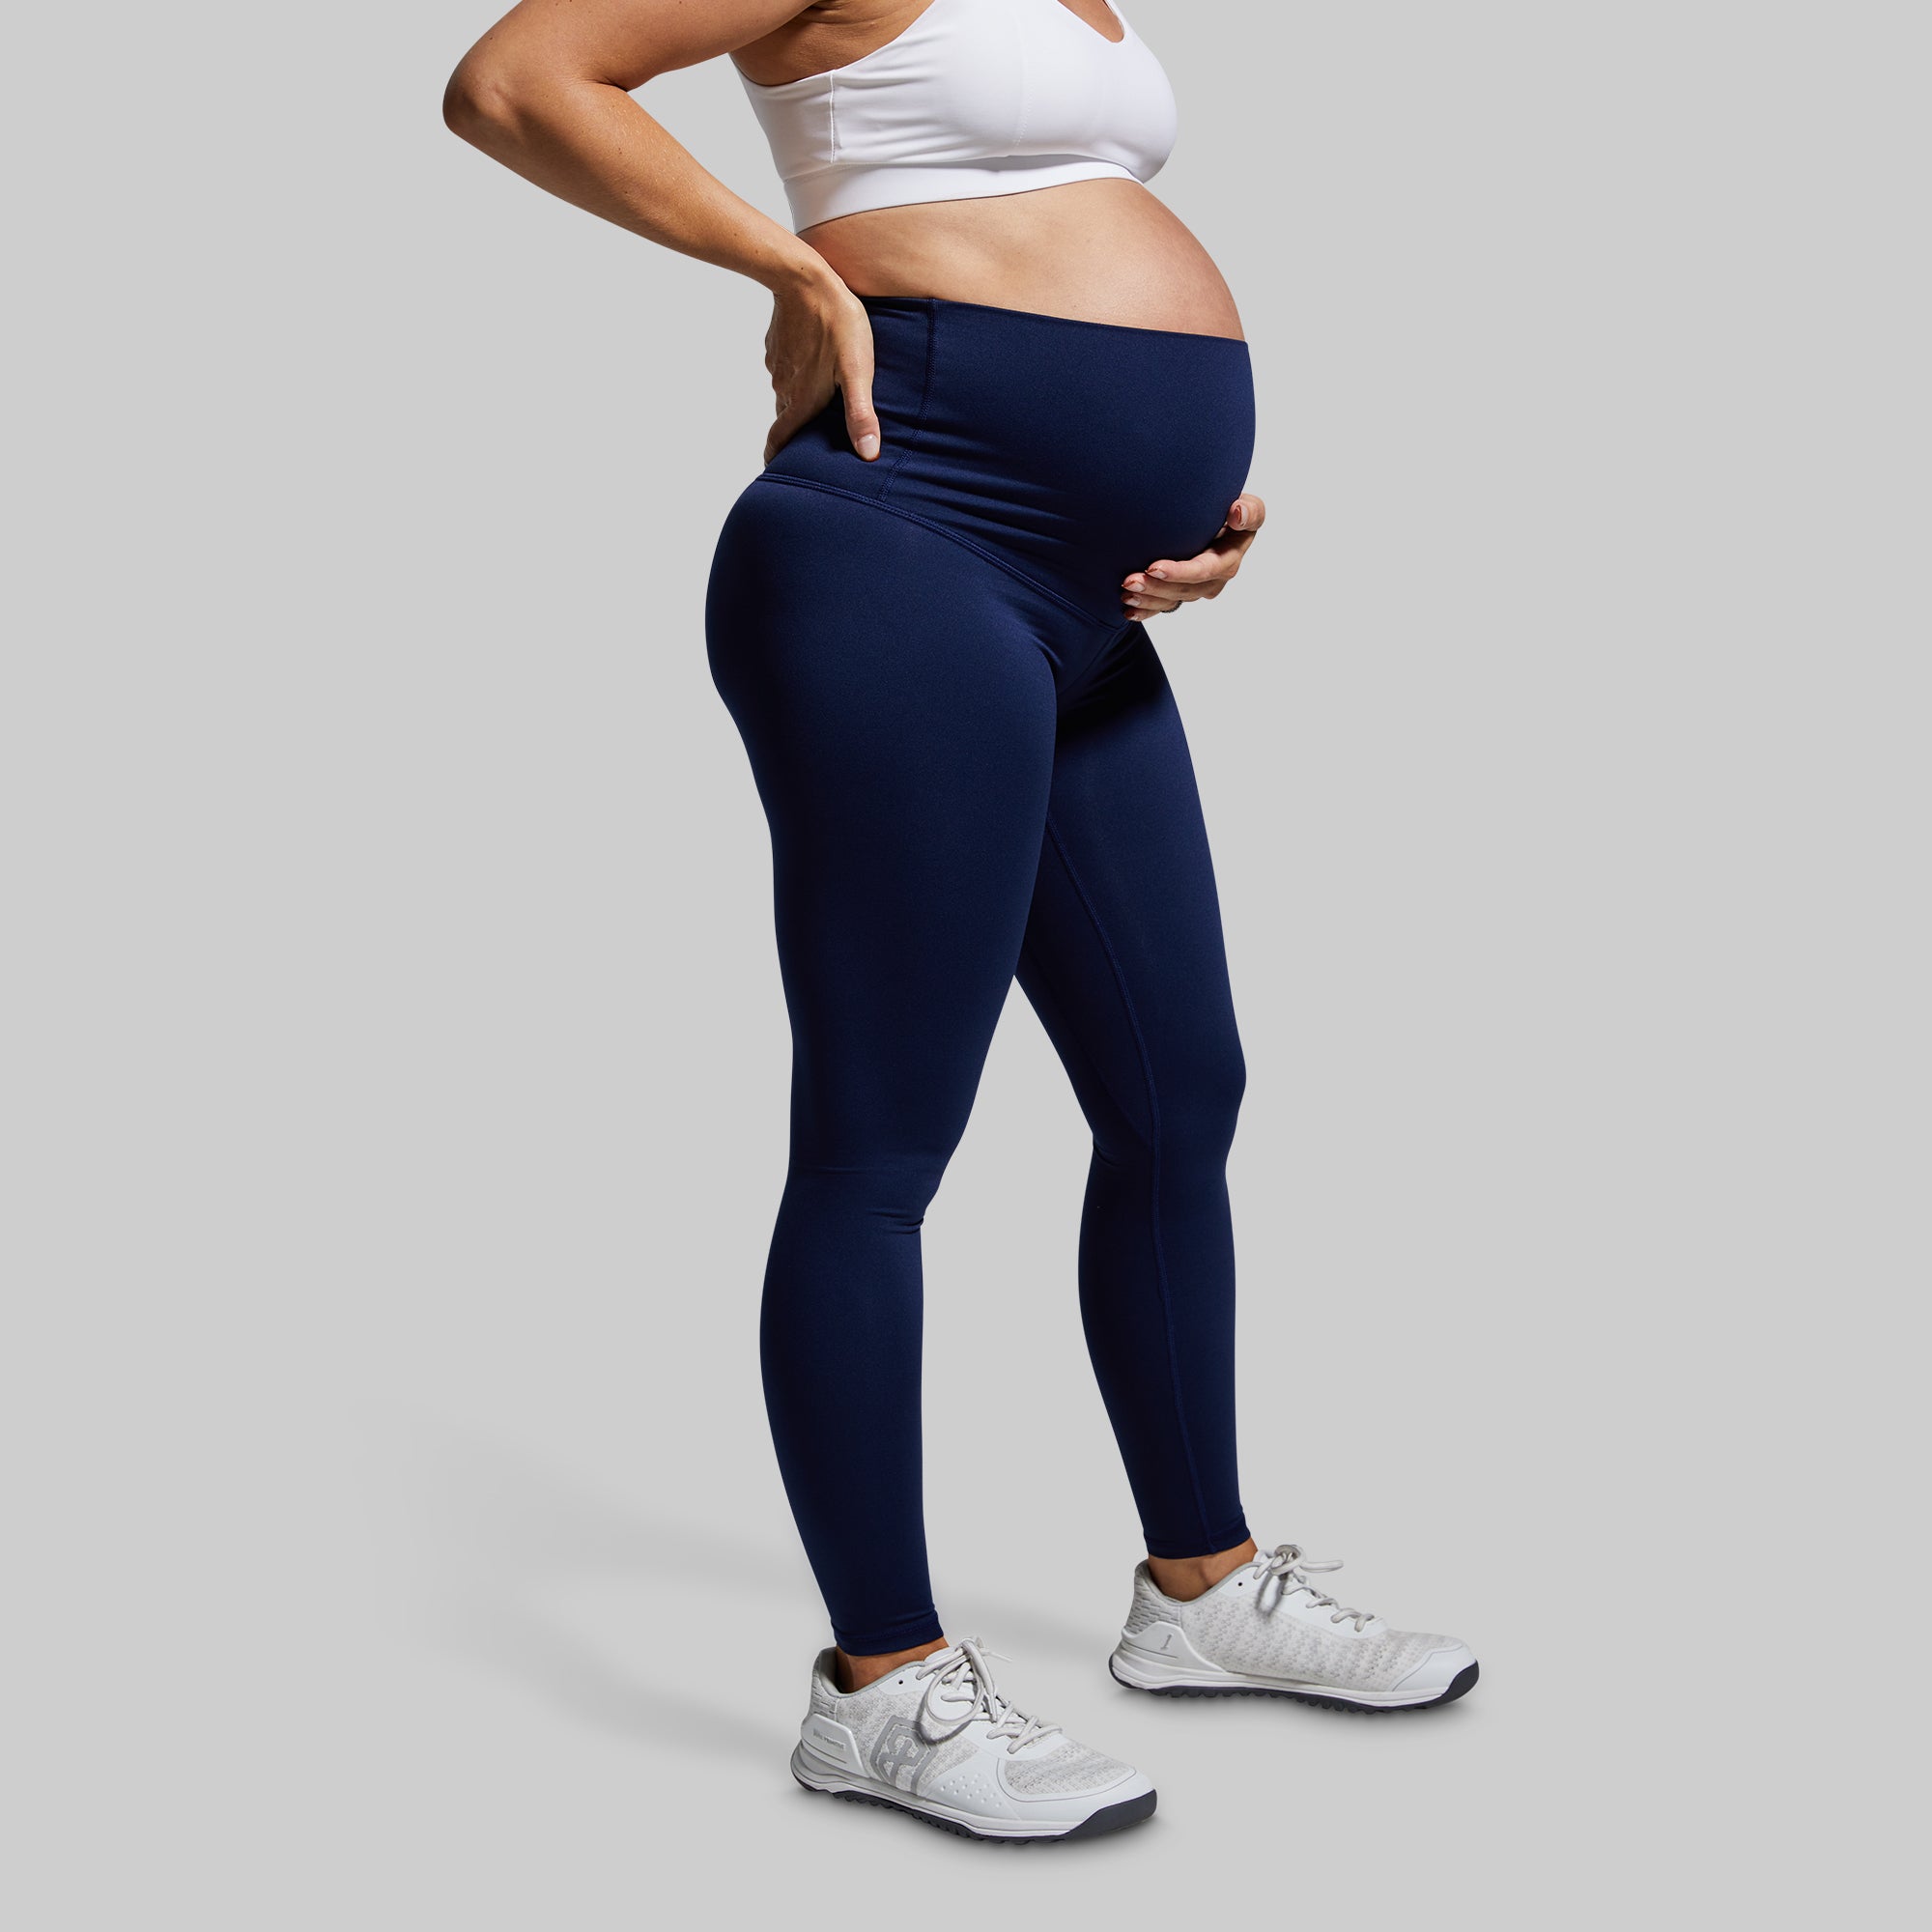 Women's Blue Workout Leggings for Pregnancy – bornprimitive canada